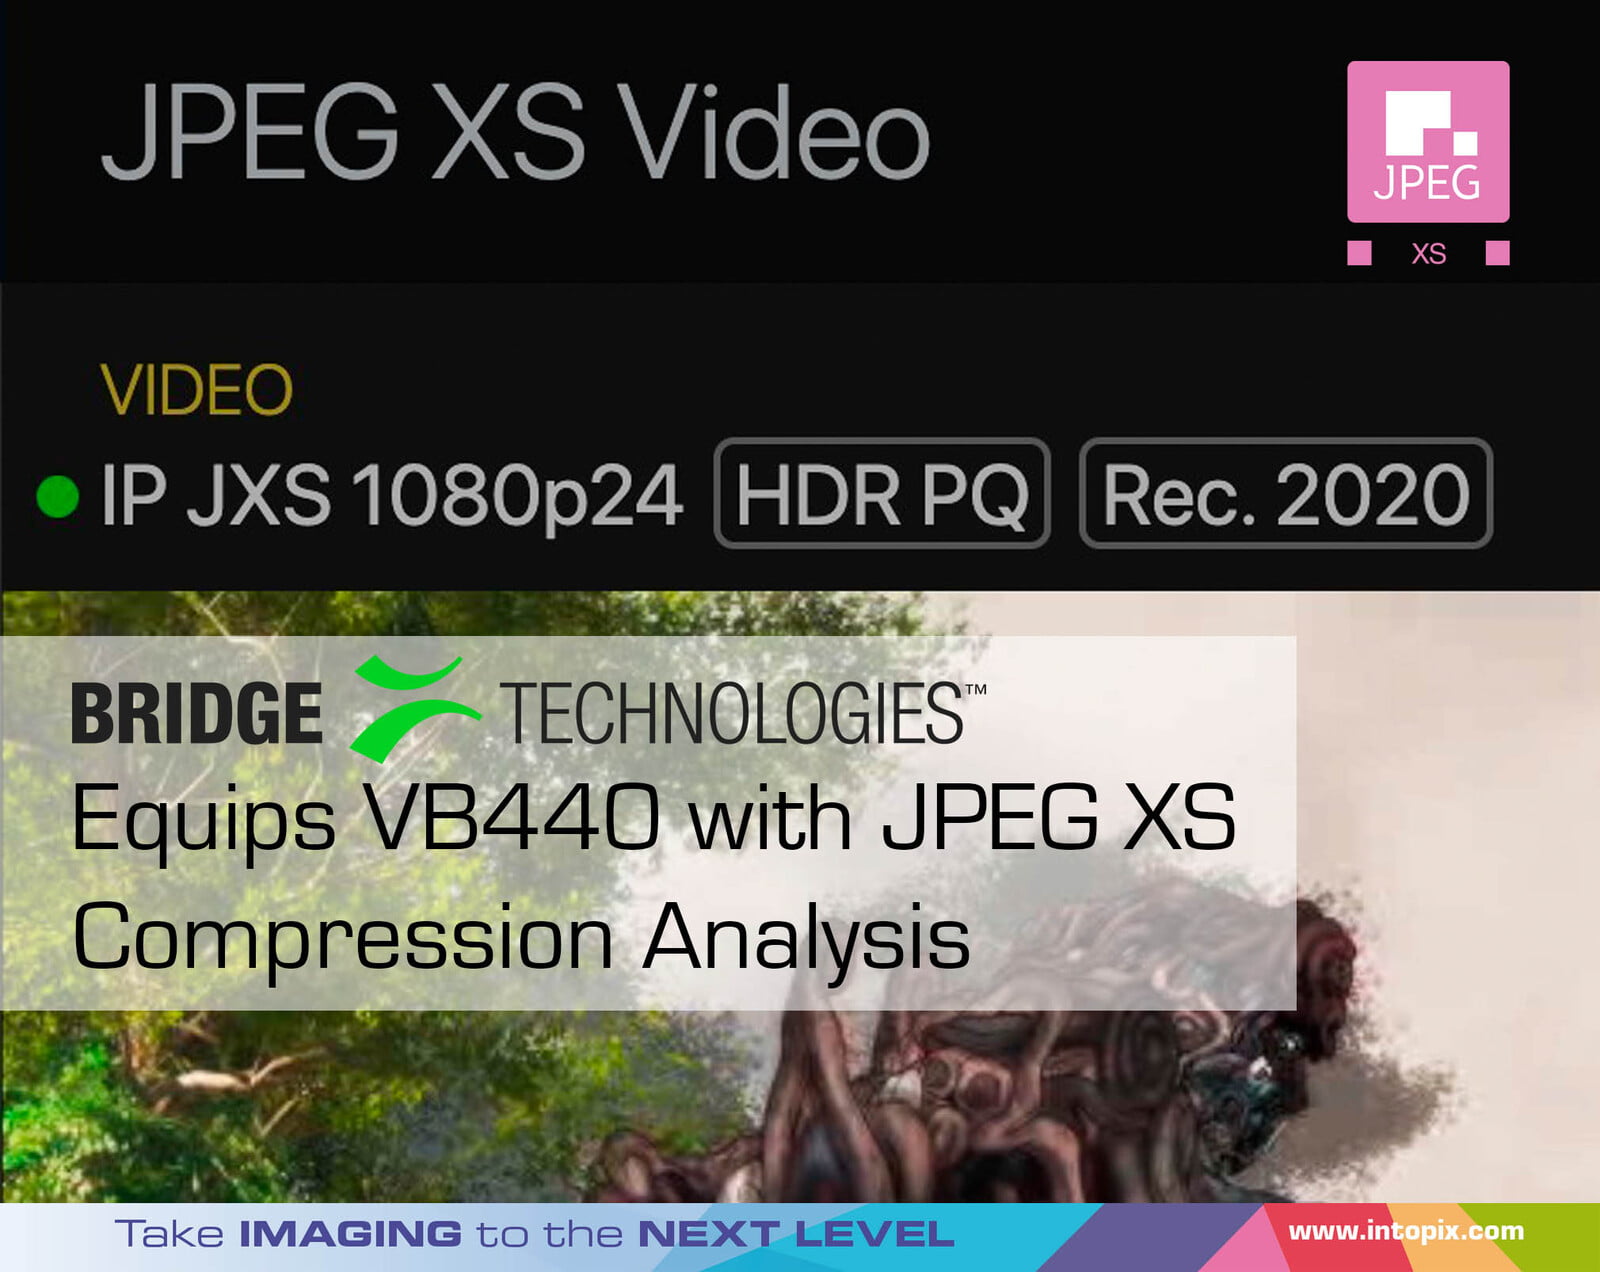 ブリッジテクノロジーズ、VB440にJPEG XS圧縮解析機能を搭載 